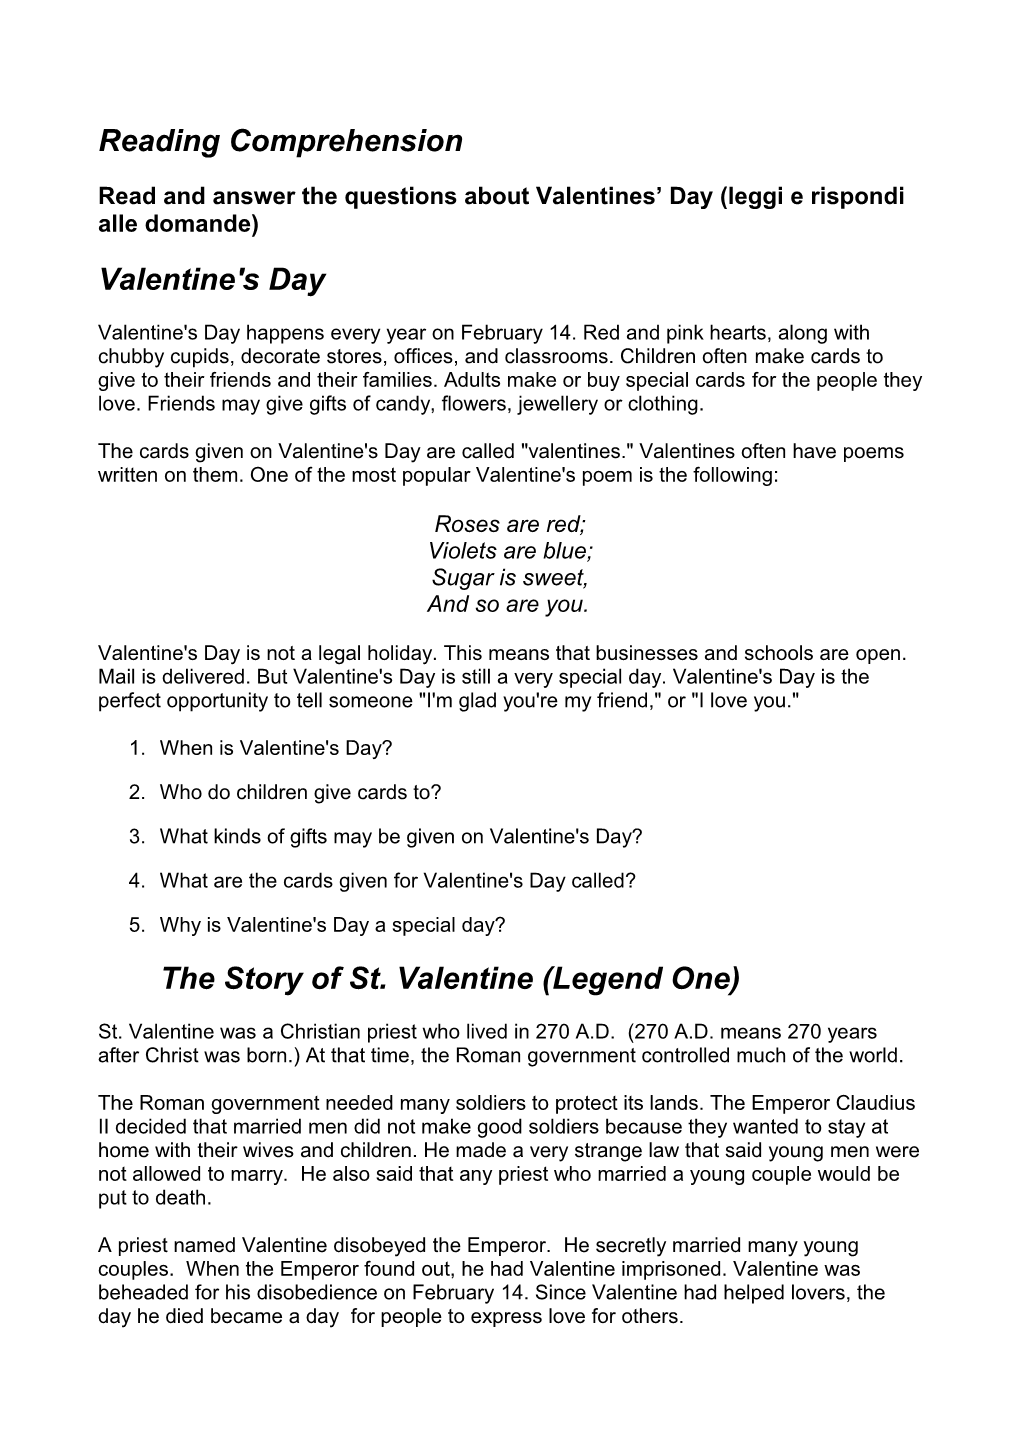 Read and Answer the Questions About Valentines Day (Leggi E Rispondi Alle Domande)